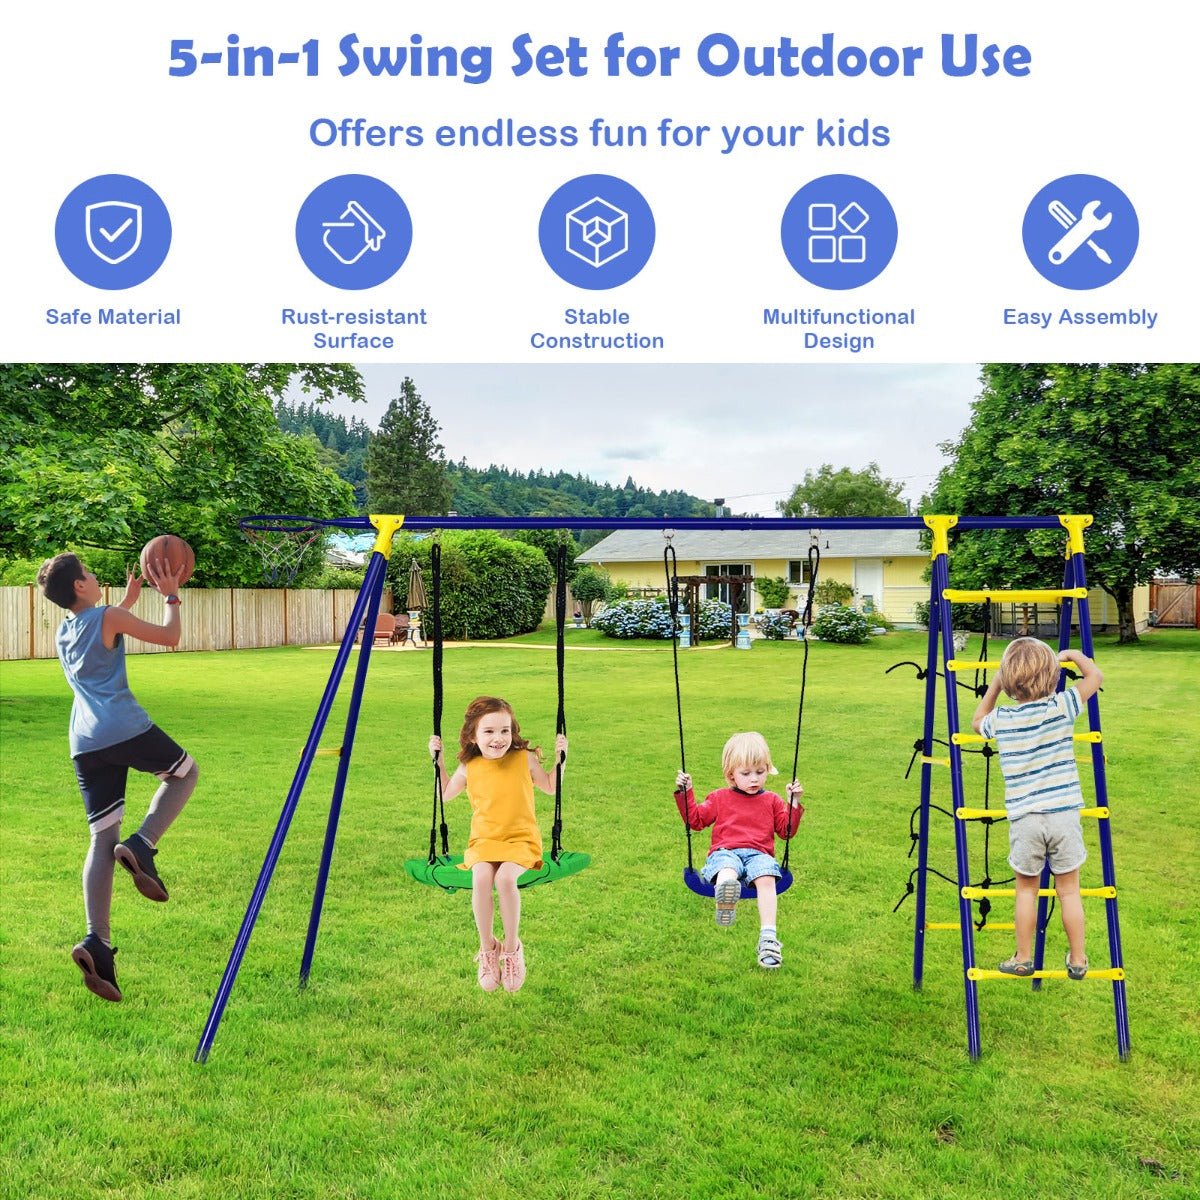 5-in-1 Backyard Swing Set: A-Shaped Metal Frame for Kids Joy